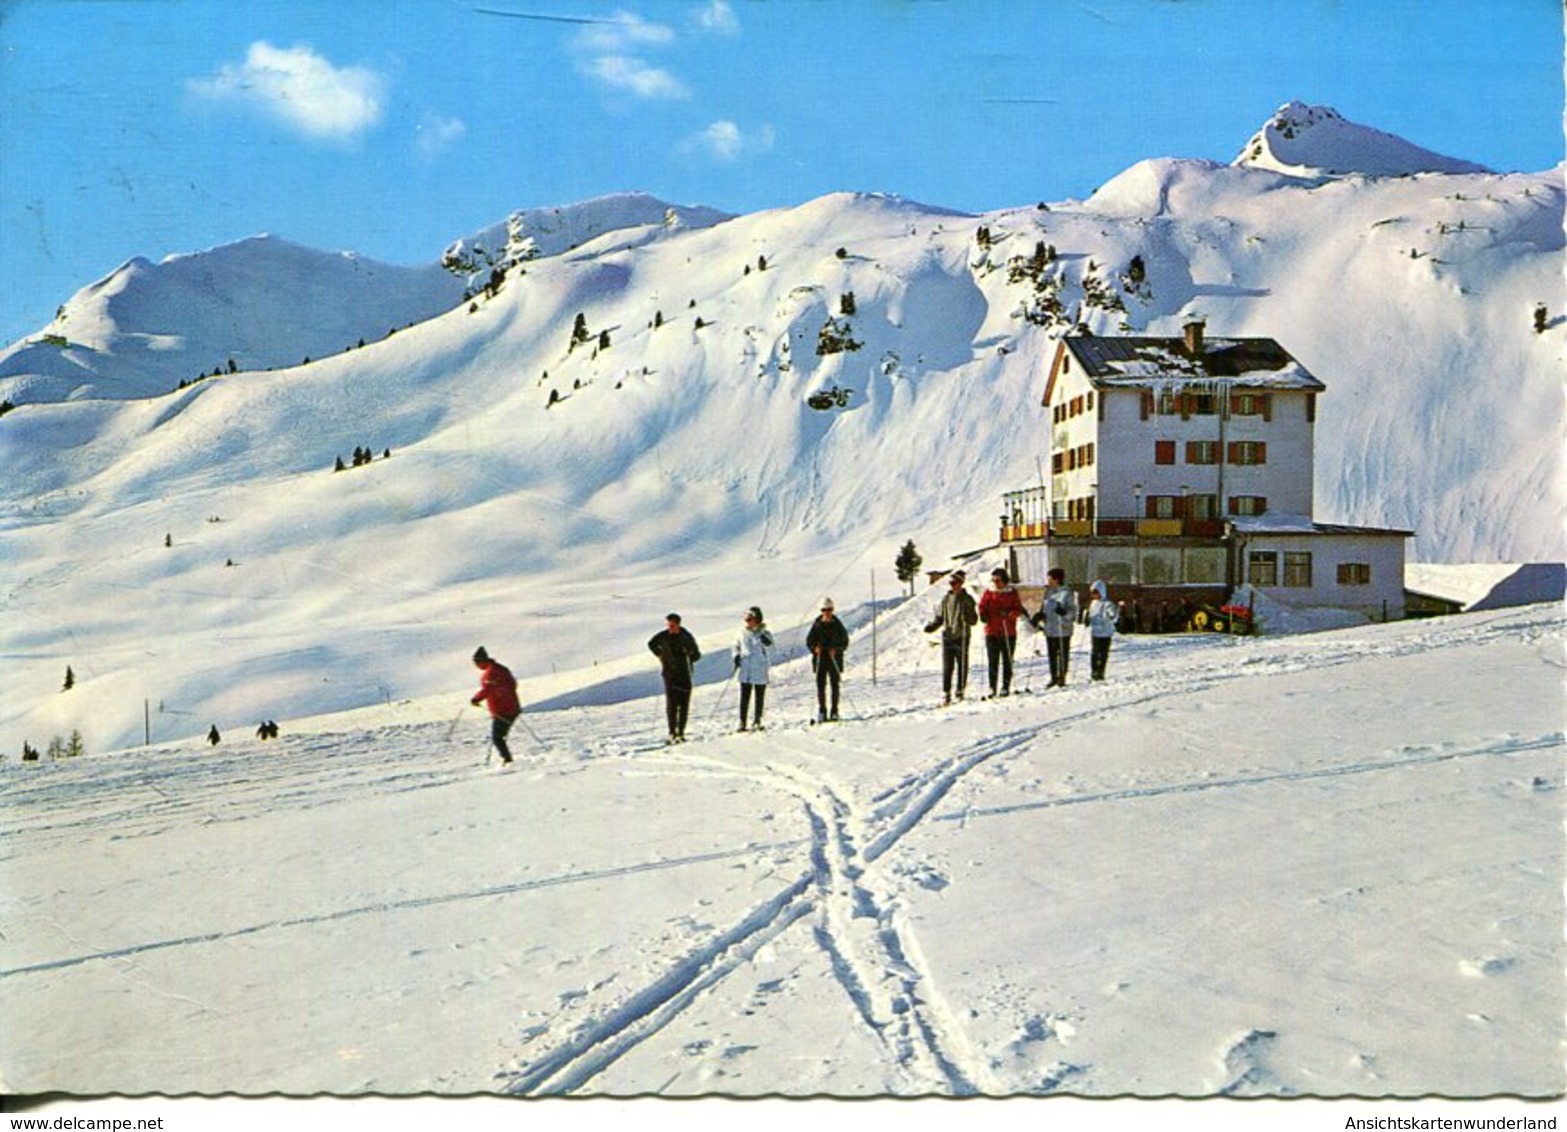 009027 Obertauern - Ski- Und Ferienheim Theodor-Körner-Haus - Obertauern